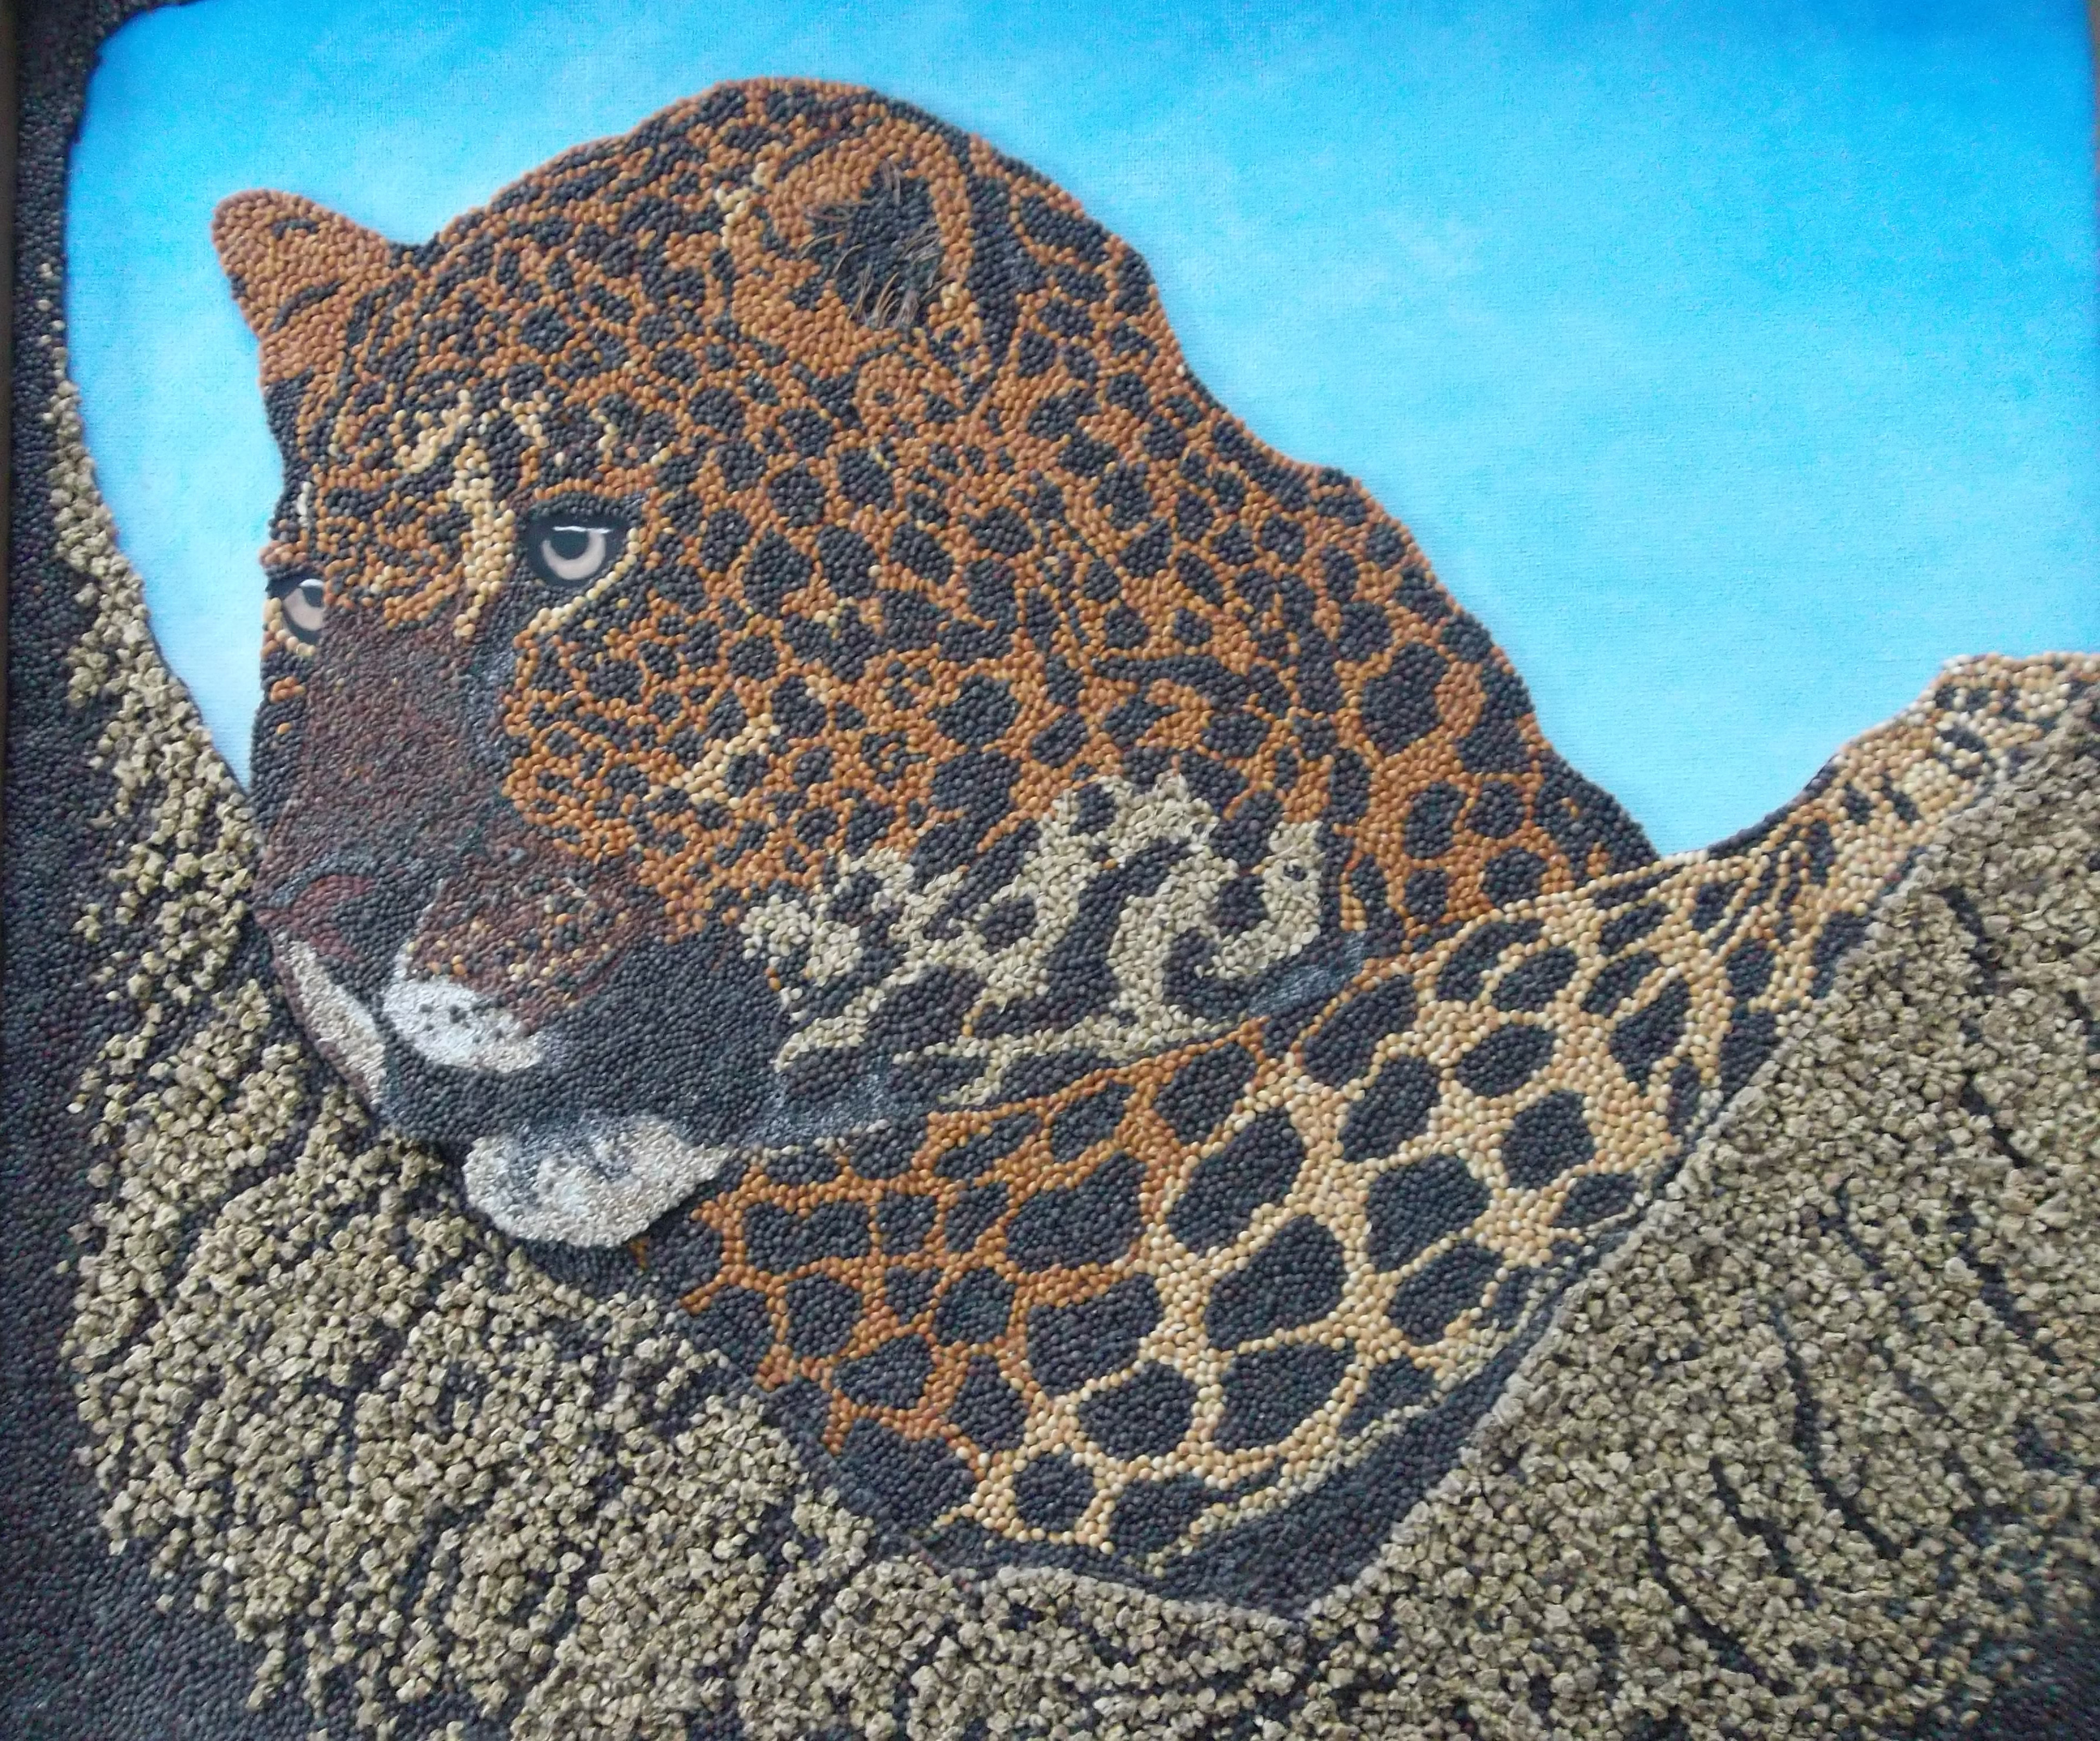 [Linda Paulsen Spotted Jaguar image]